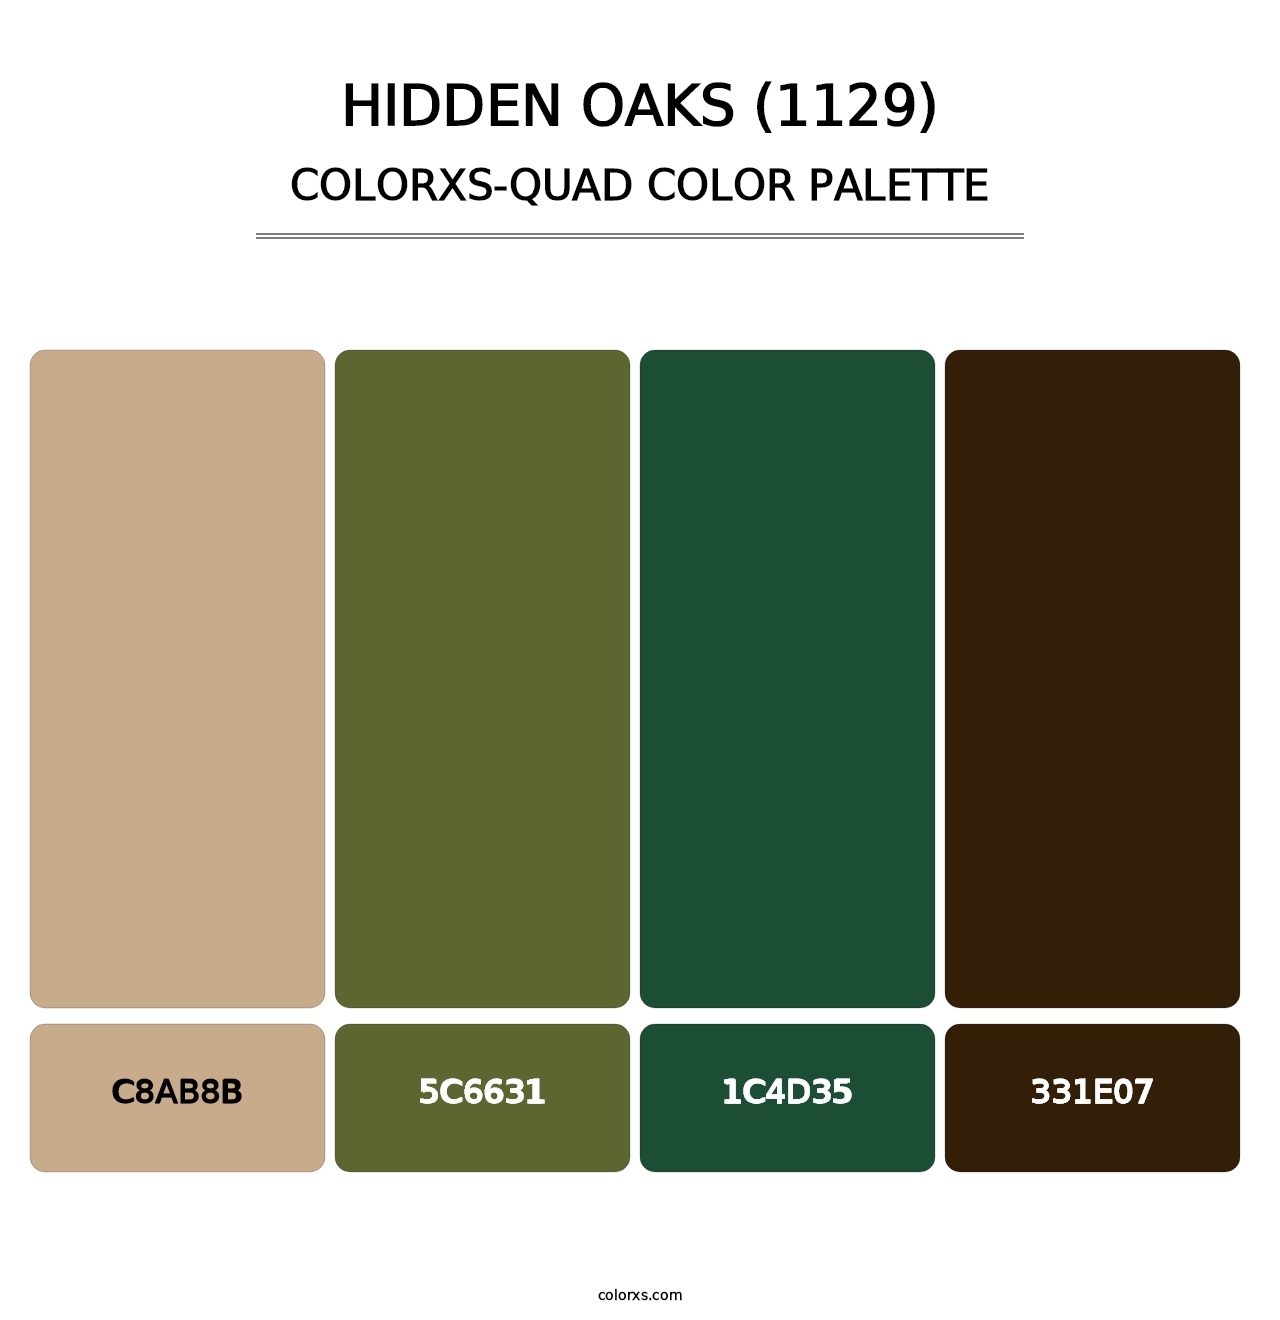 Hidden Oaks (1129) - Colorxs Quad Palette